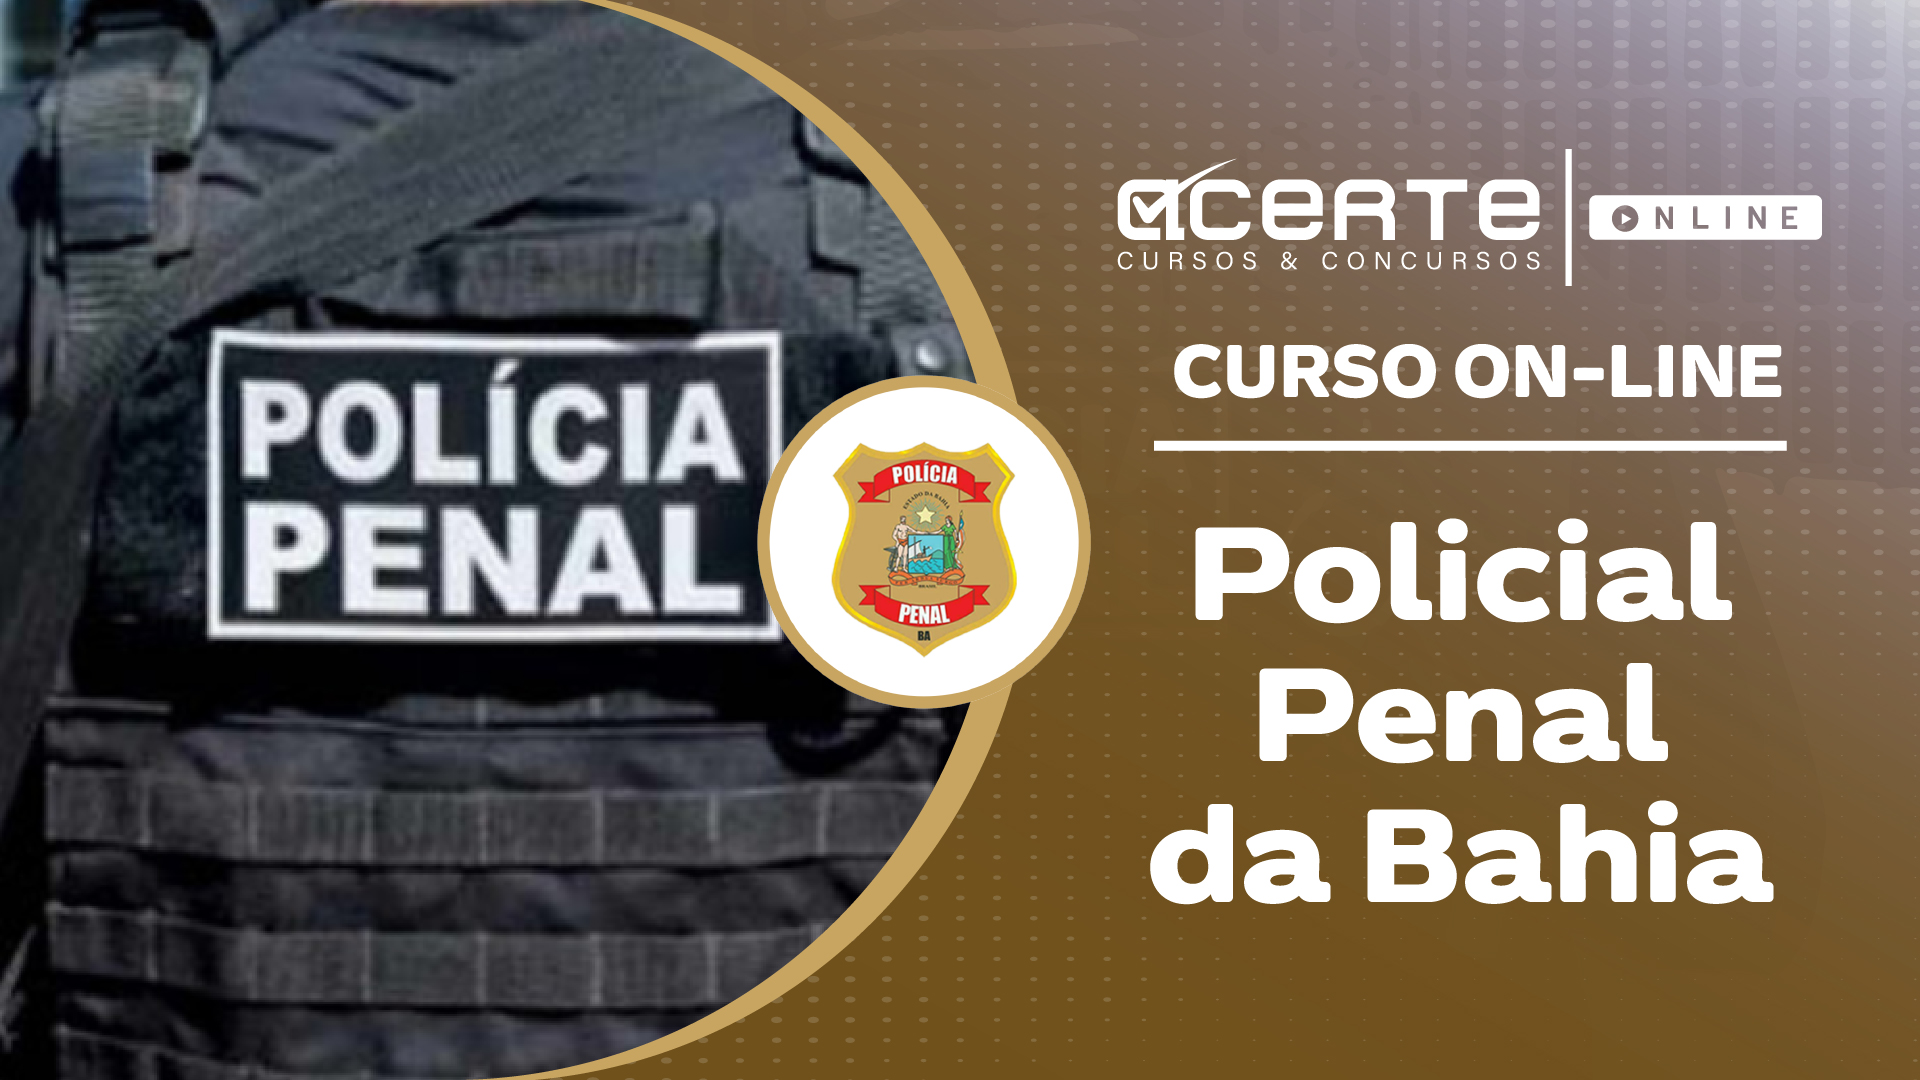 Polícia Penal da Bahia - PP - Online